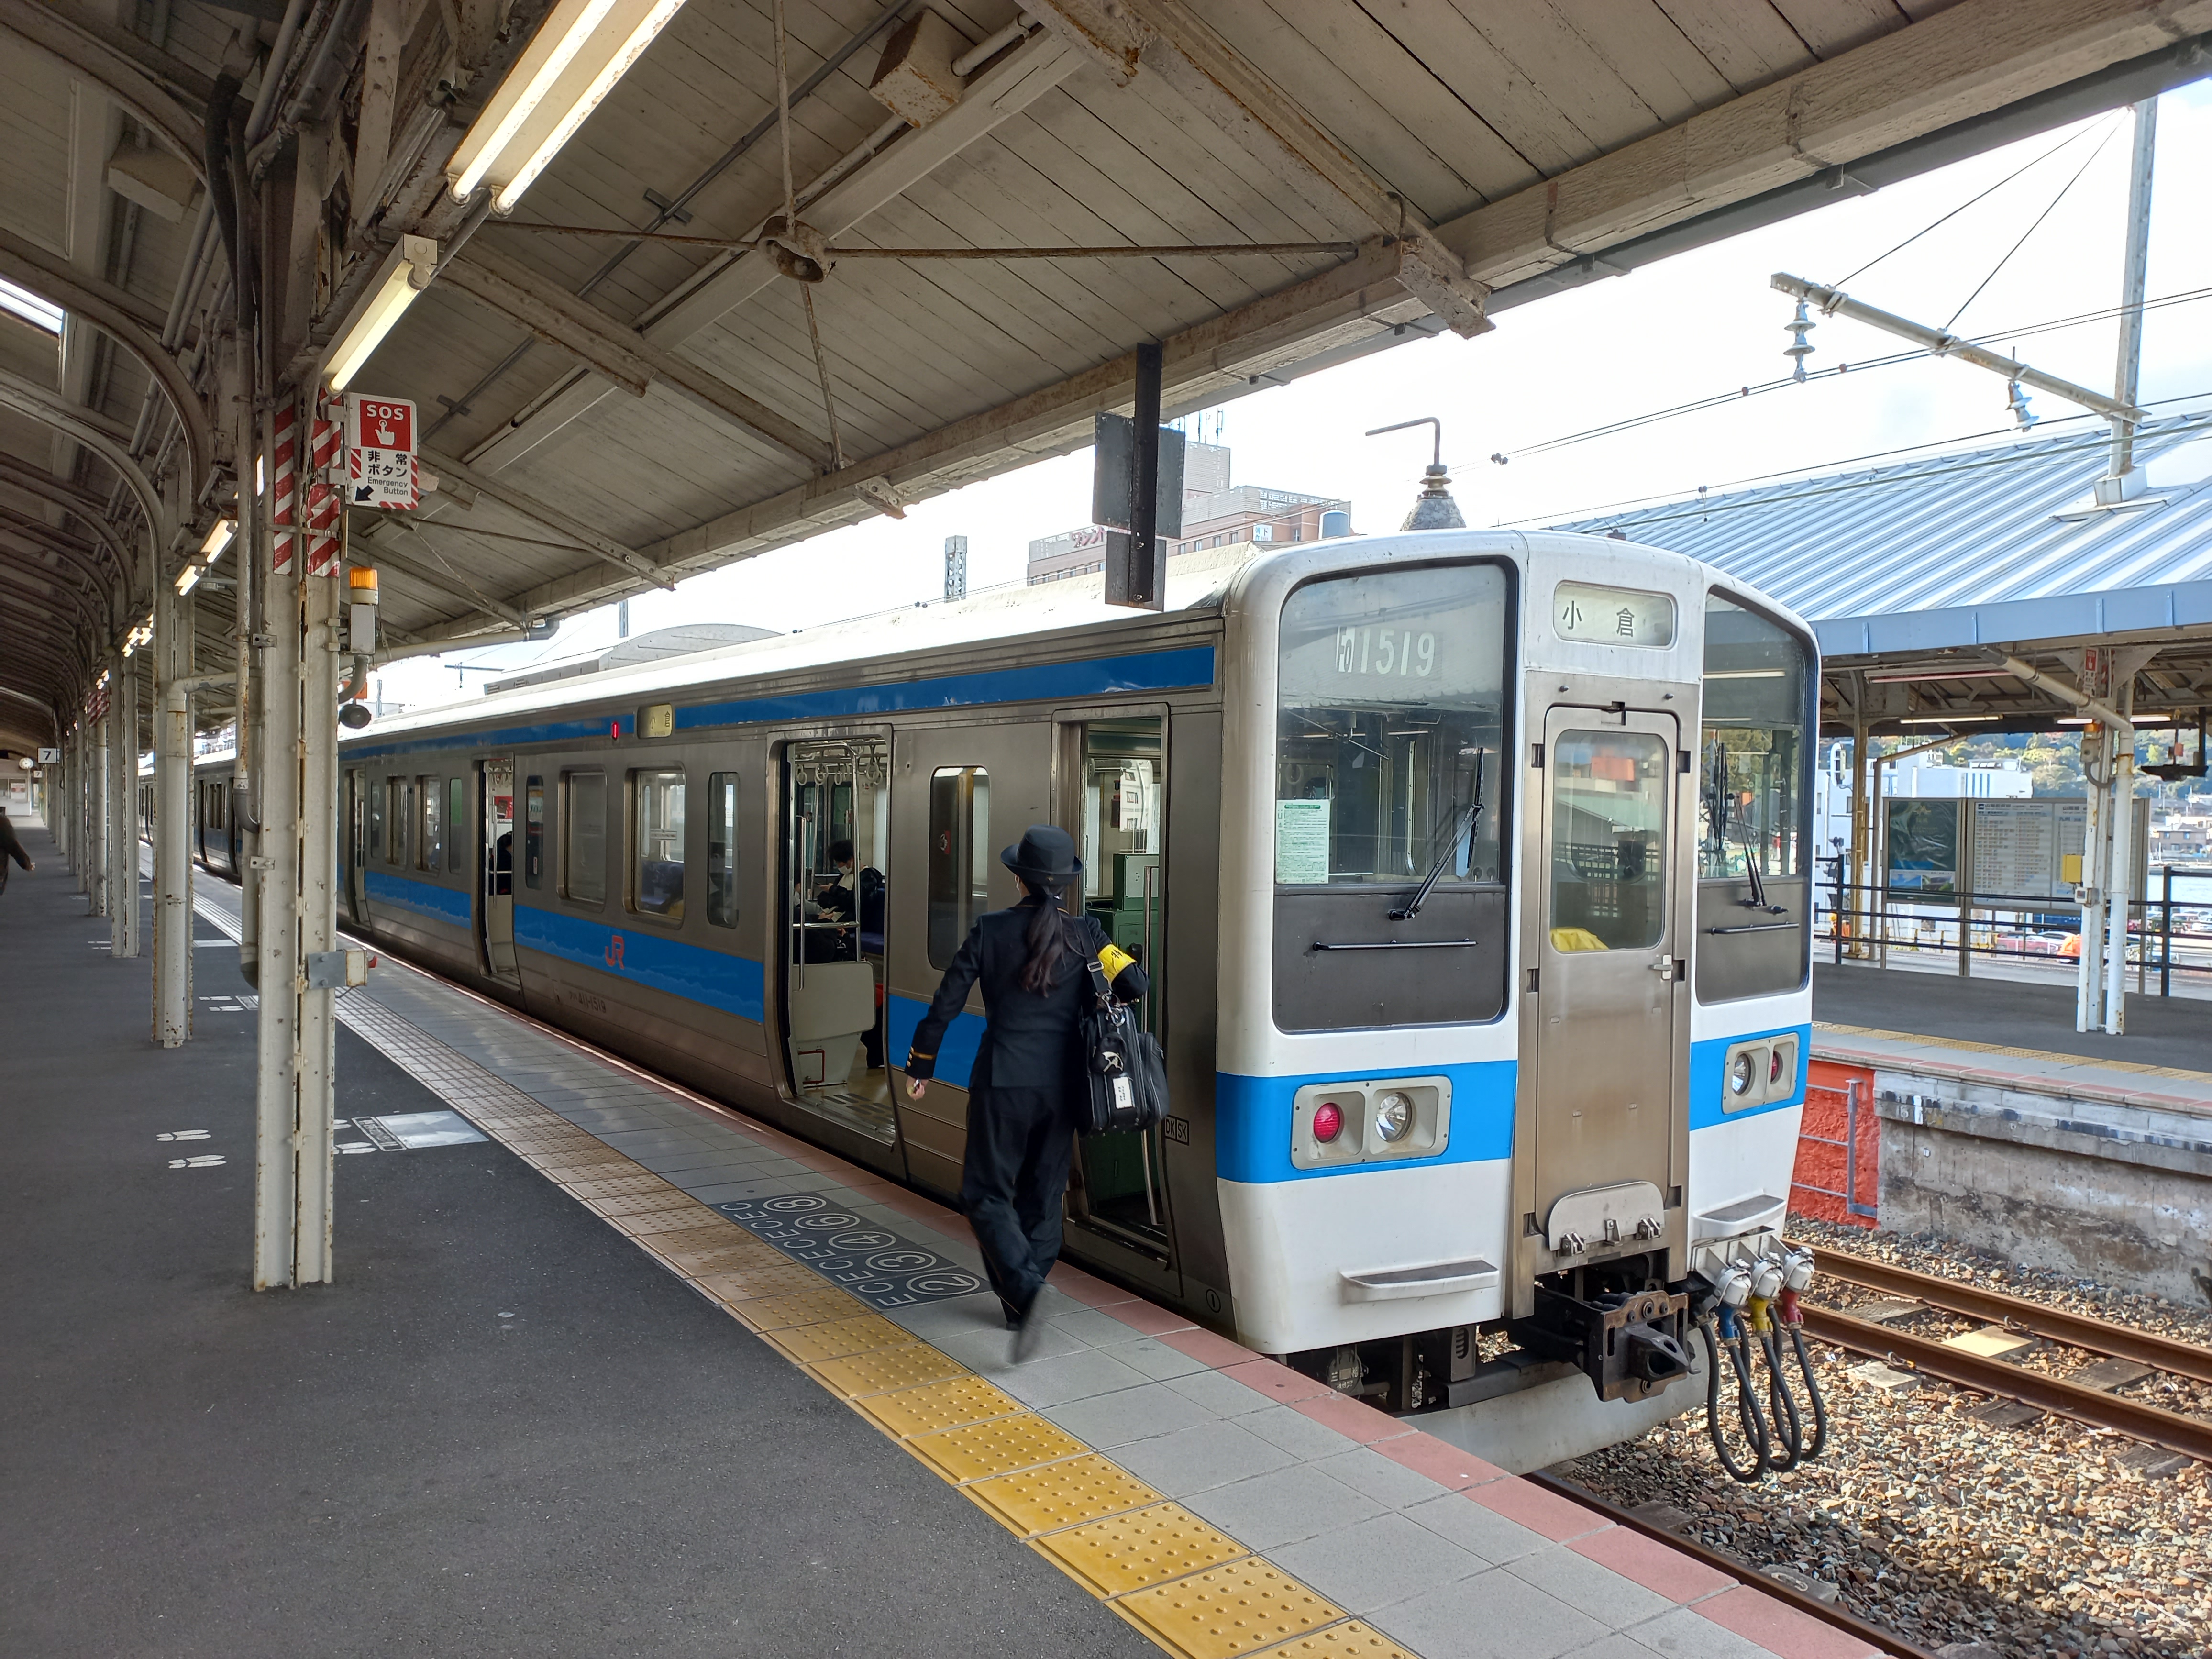 타고 온 열차가 코쿠라역행 열차로 바뀌었다.